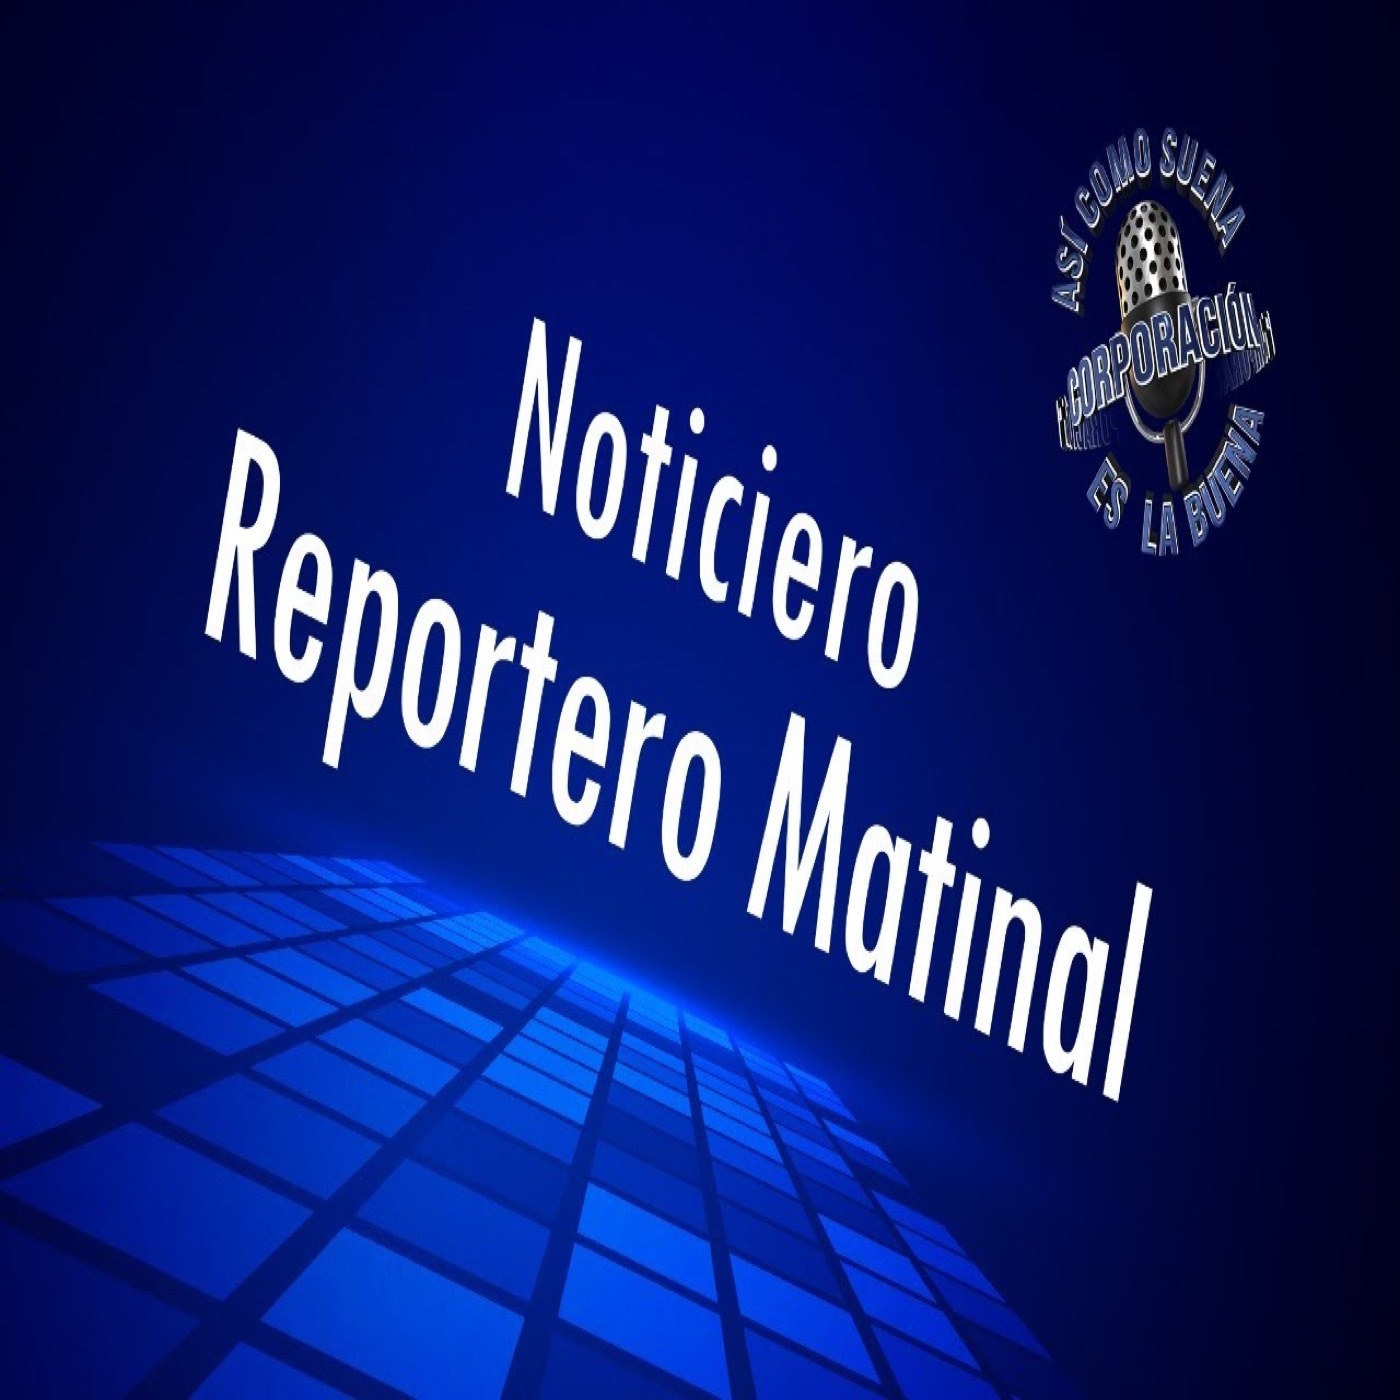 Noticiero Reportero Matinal - Thursday, November 24, 2022